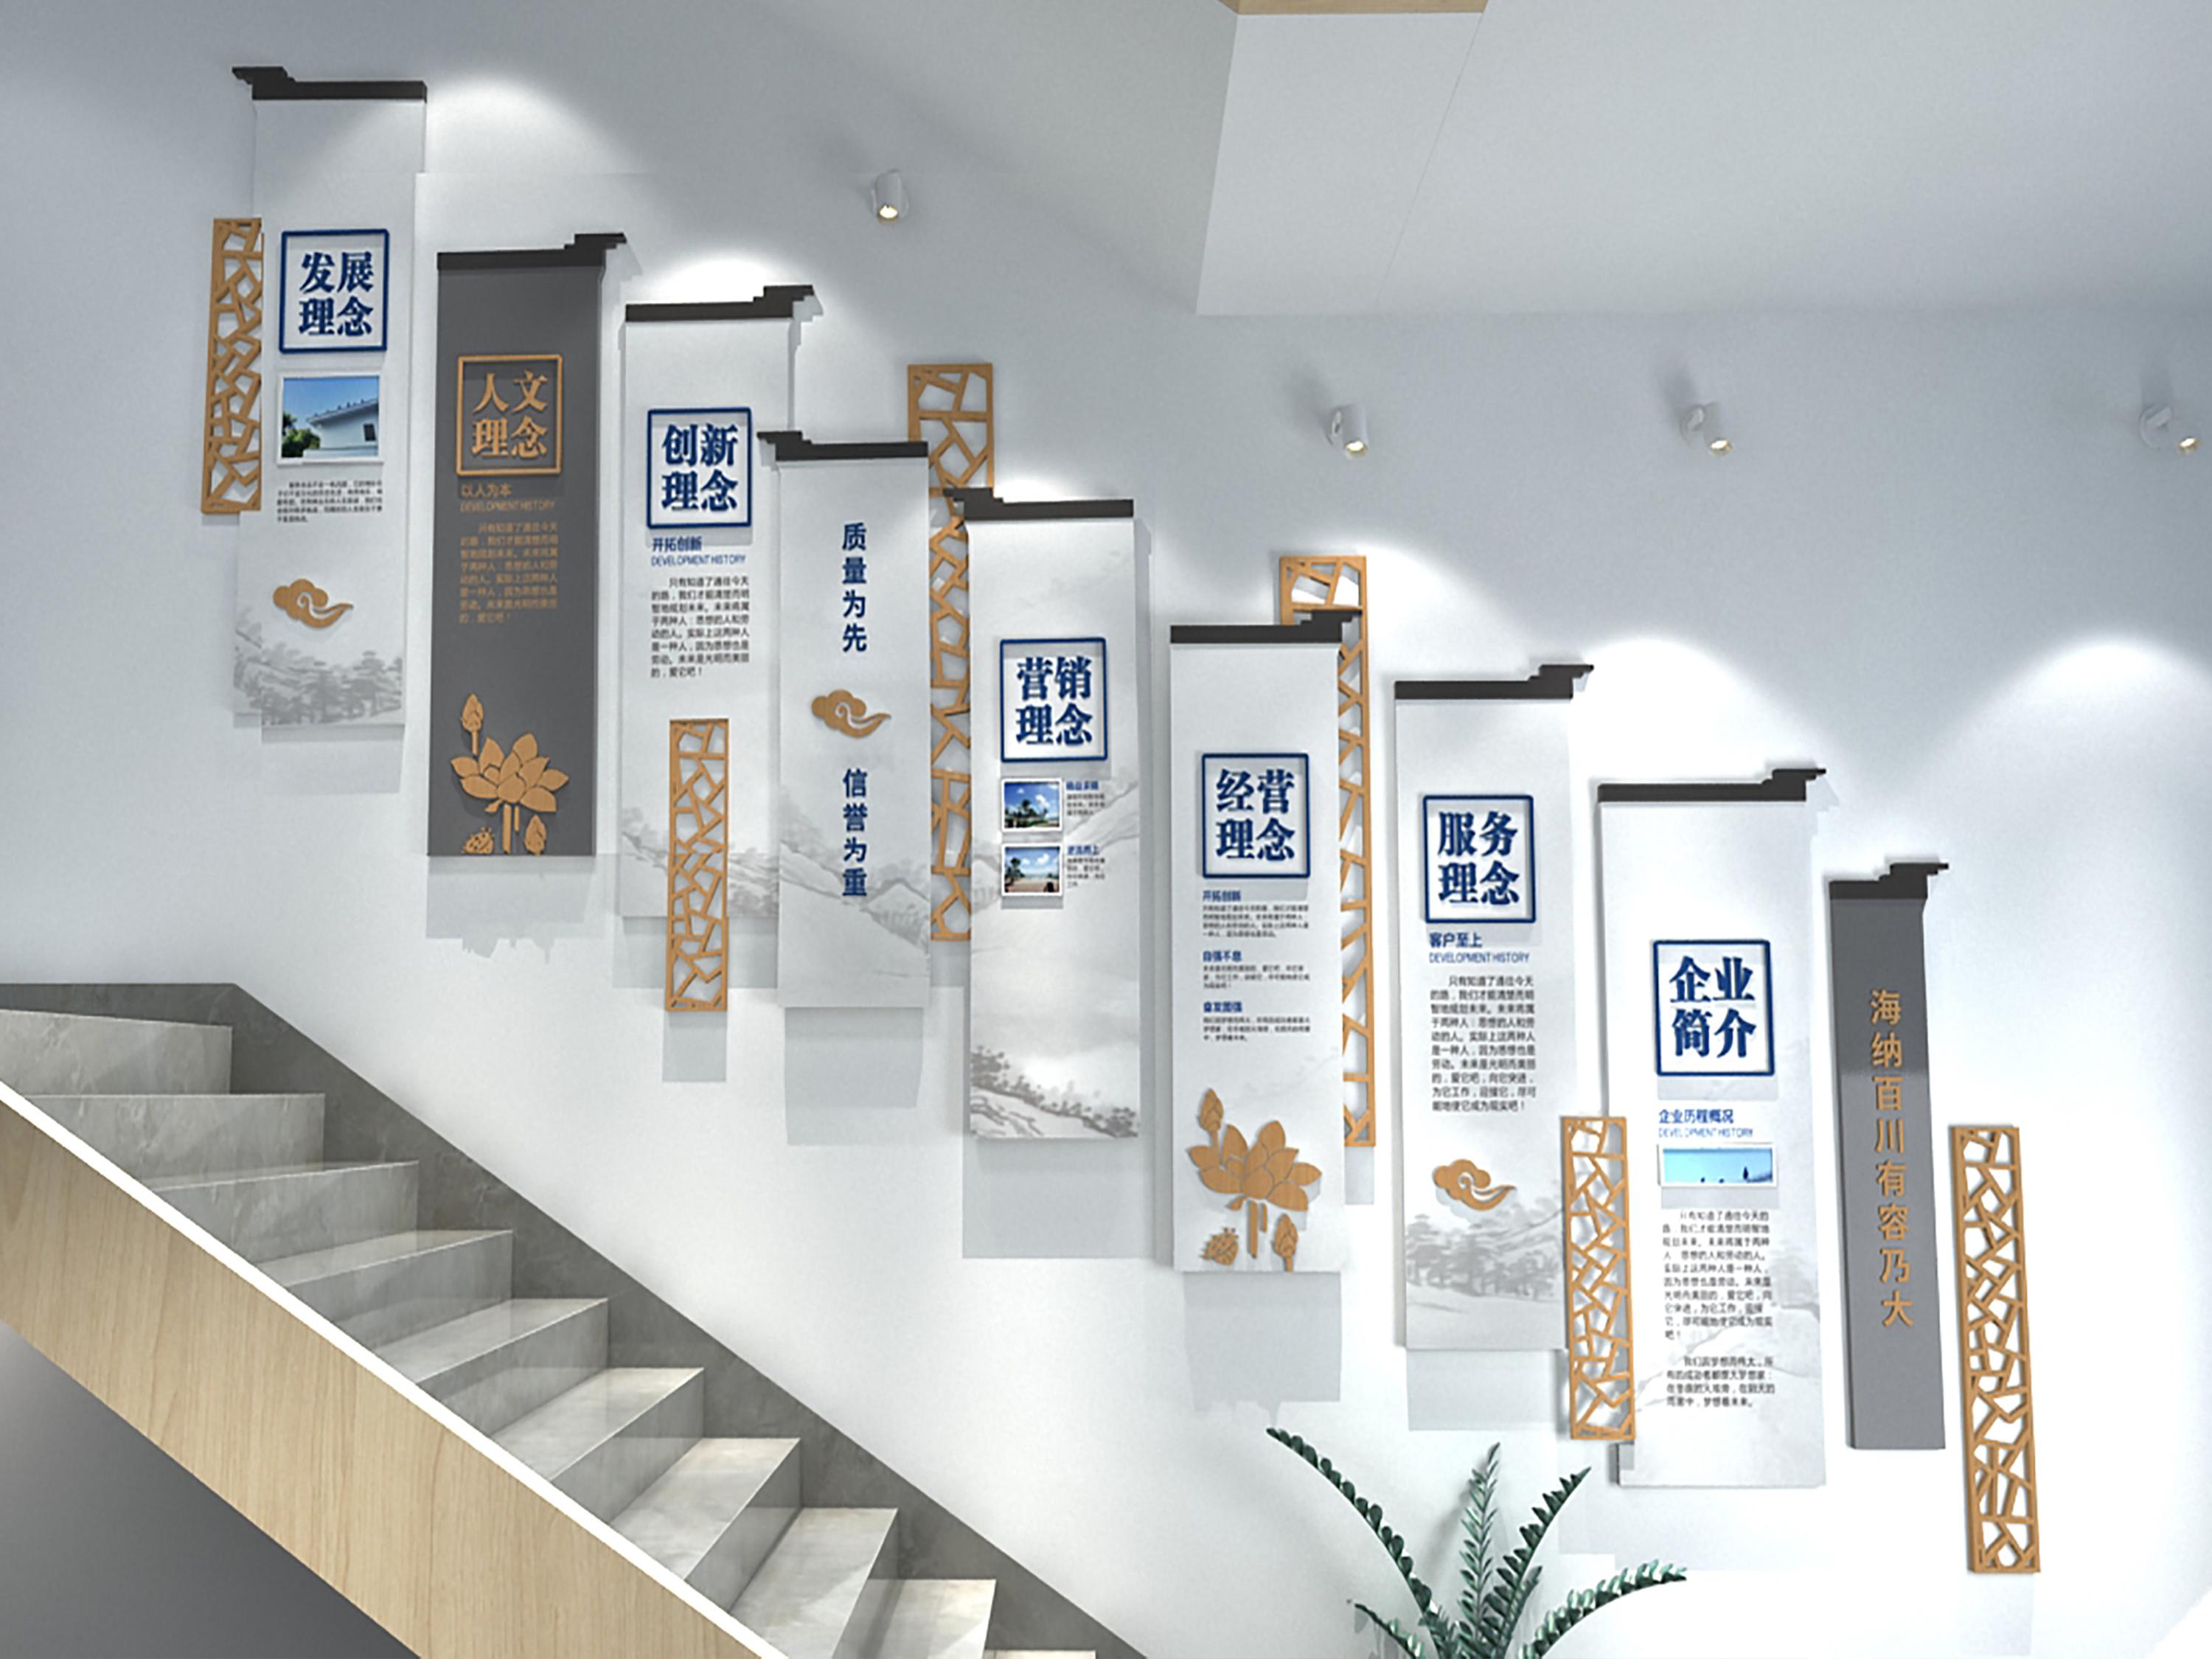 东莞纺织企业文化墙策划设计方案与思路分享 